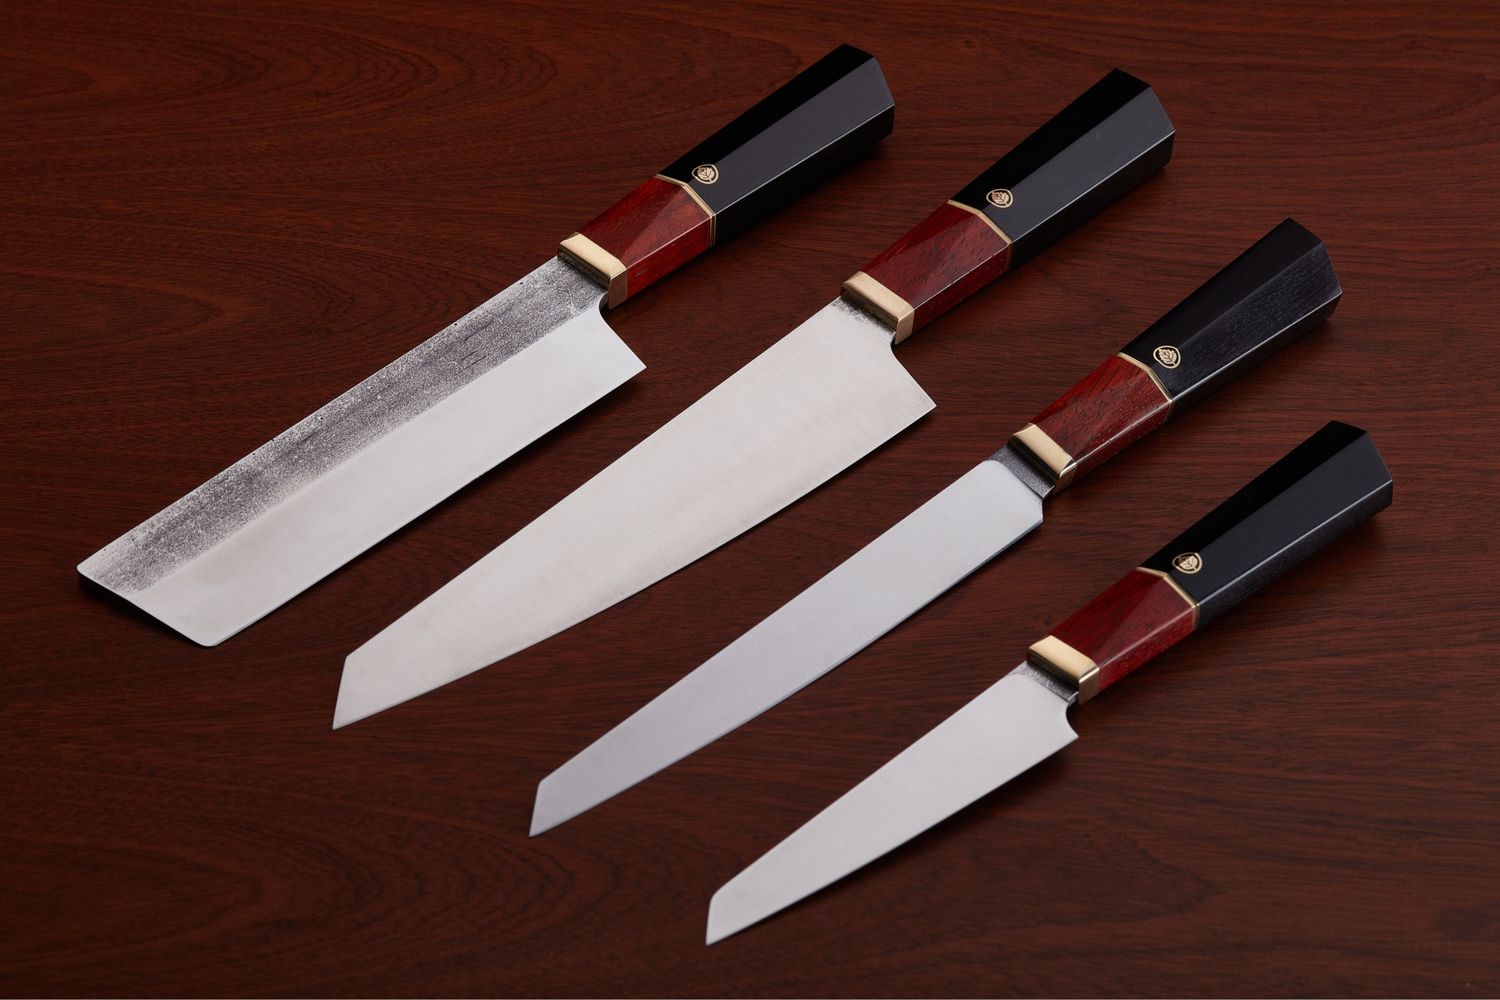  кухонных ножей в е Ярмарка Мастеров по цене 70000 .